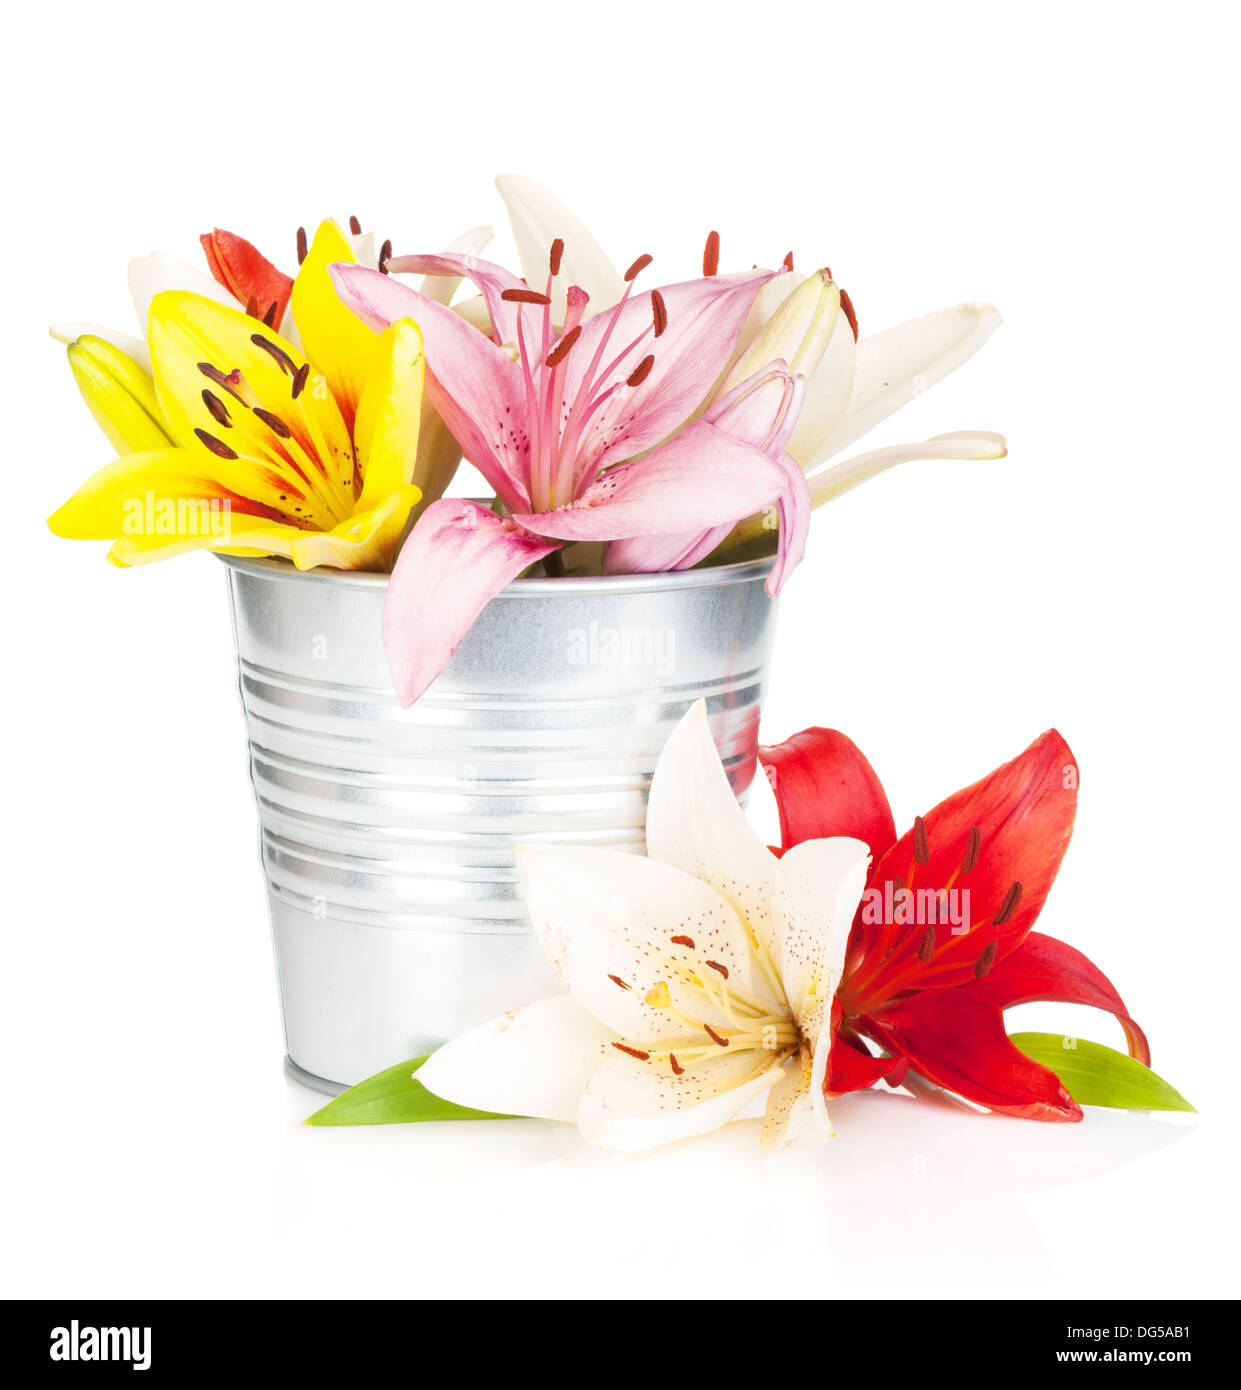 Lily colorés de fleurs dans un seau. Isolé sur fond blanc Banque D'Images